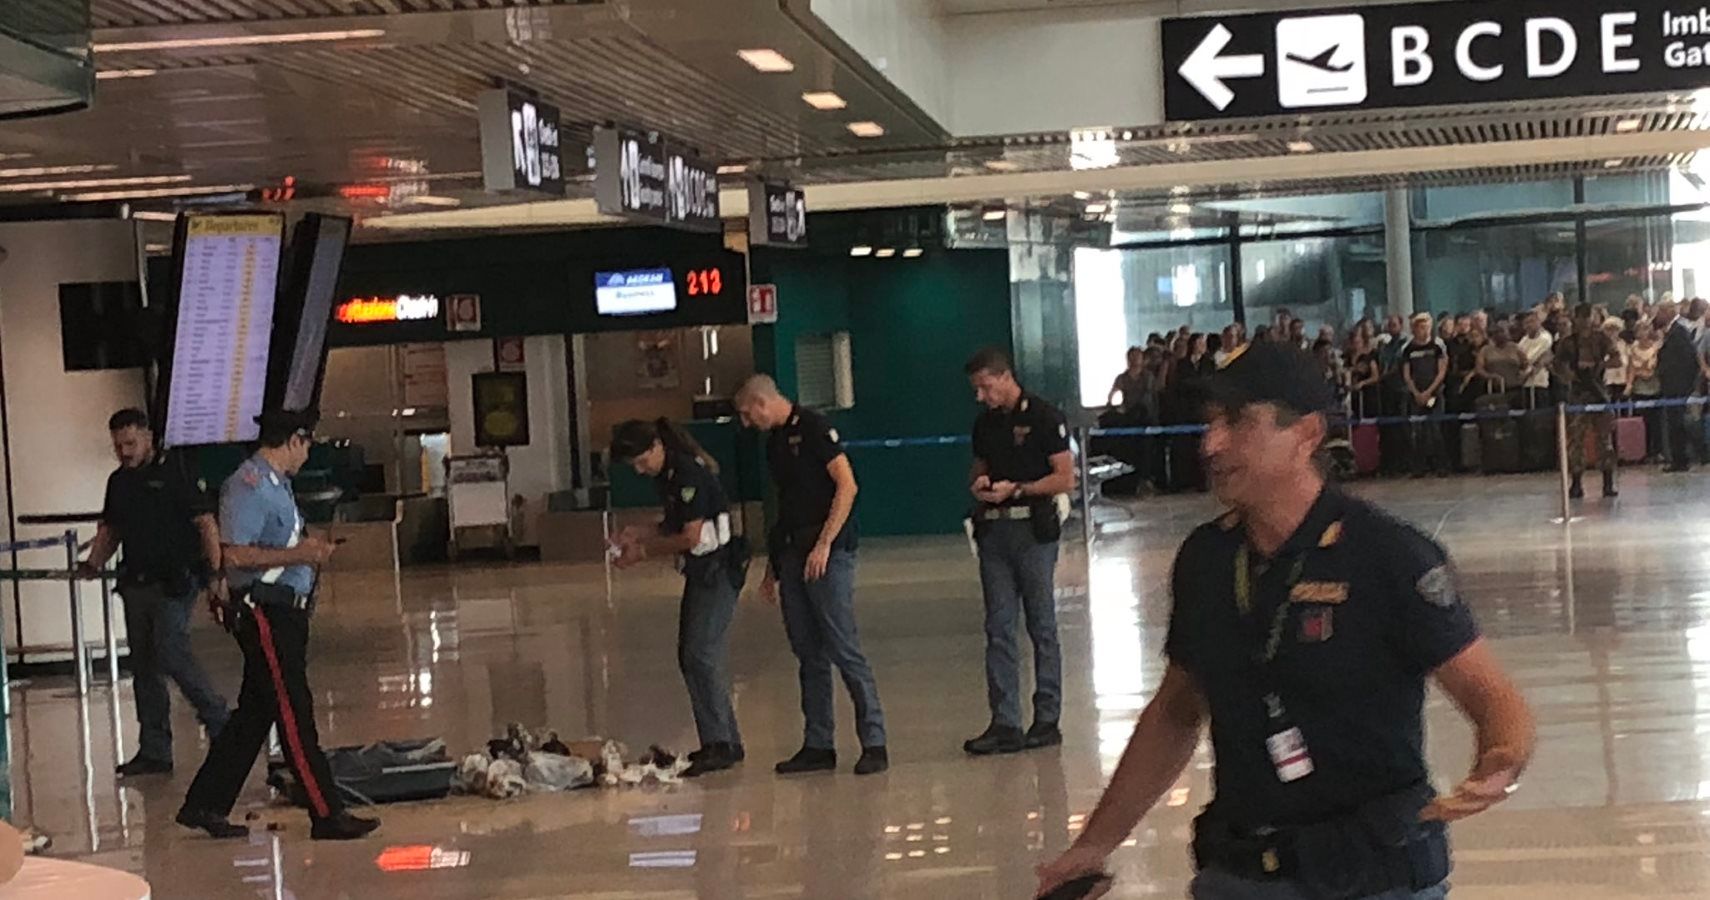 Autoridades do aeroporto de Roma explodem bolsa suspeita e acabam cheias de cocos